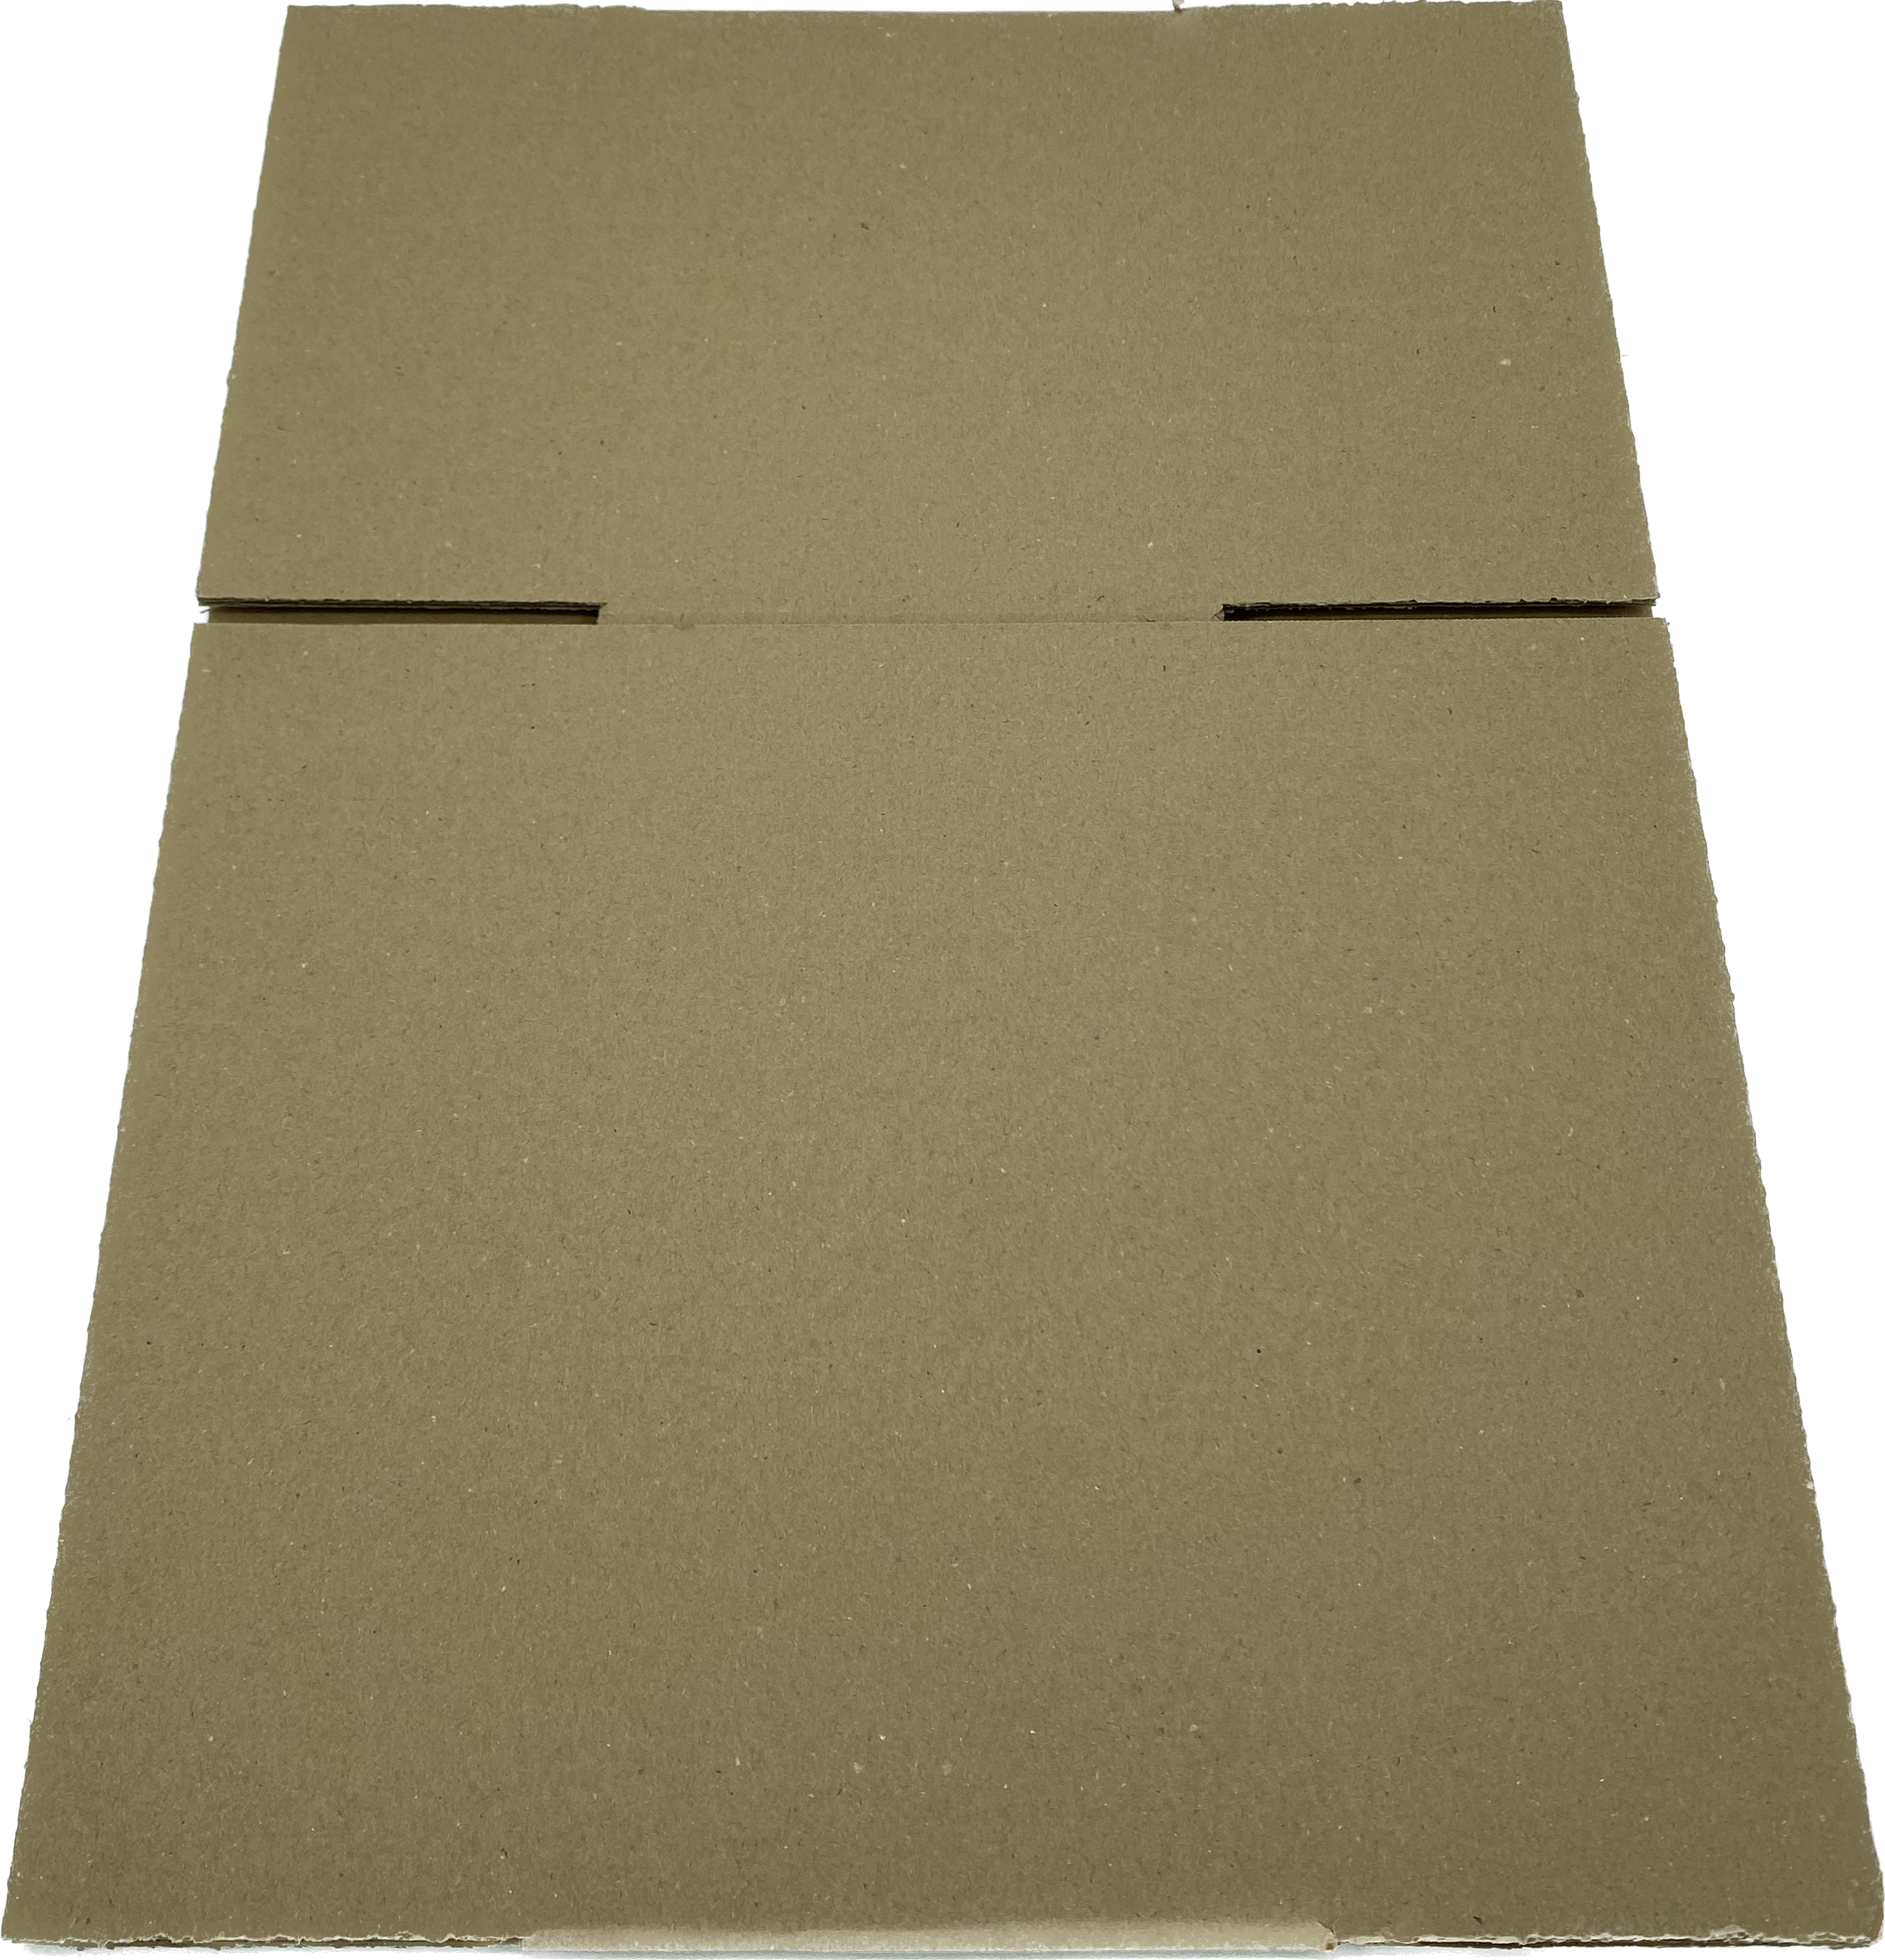 Wellpapp-Faltkarton, 325 x 220 x 160mm, 2.4BC, 0201